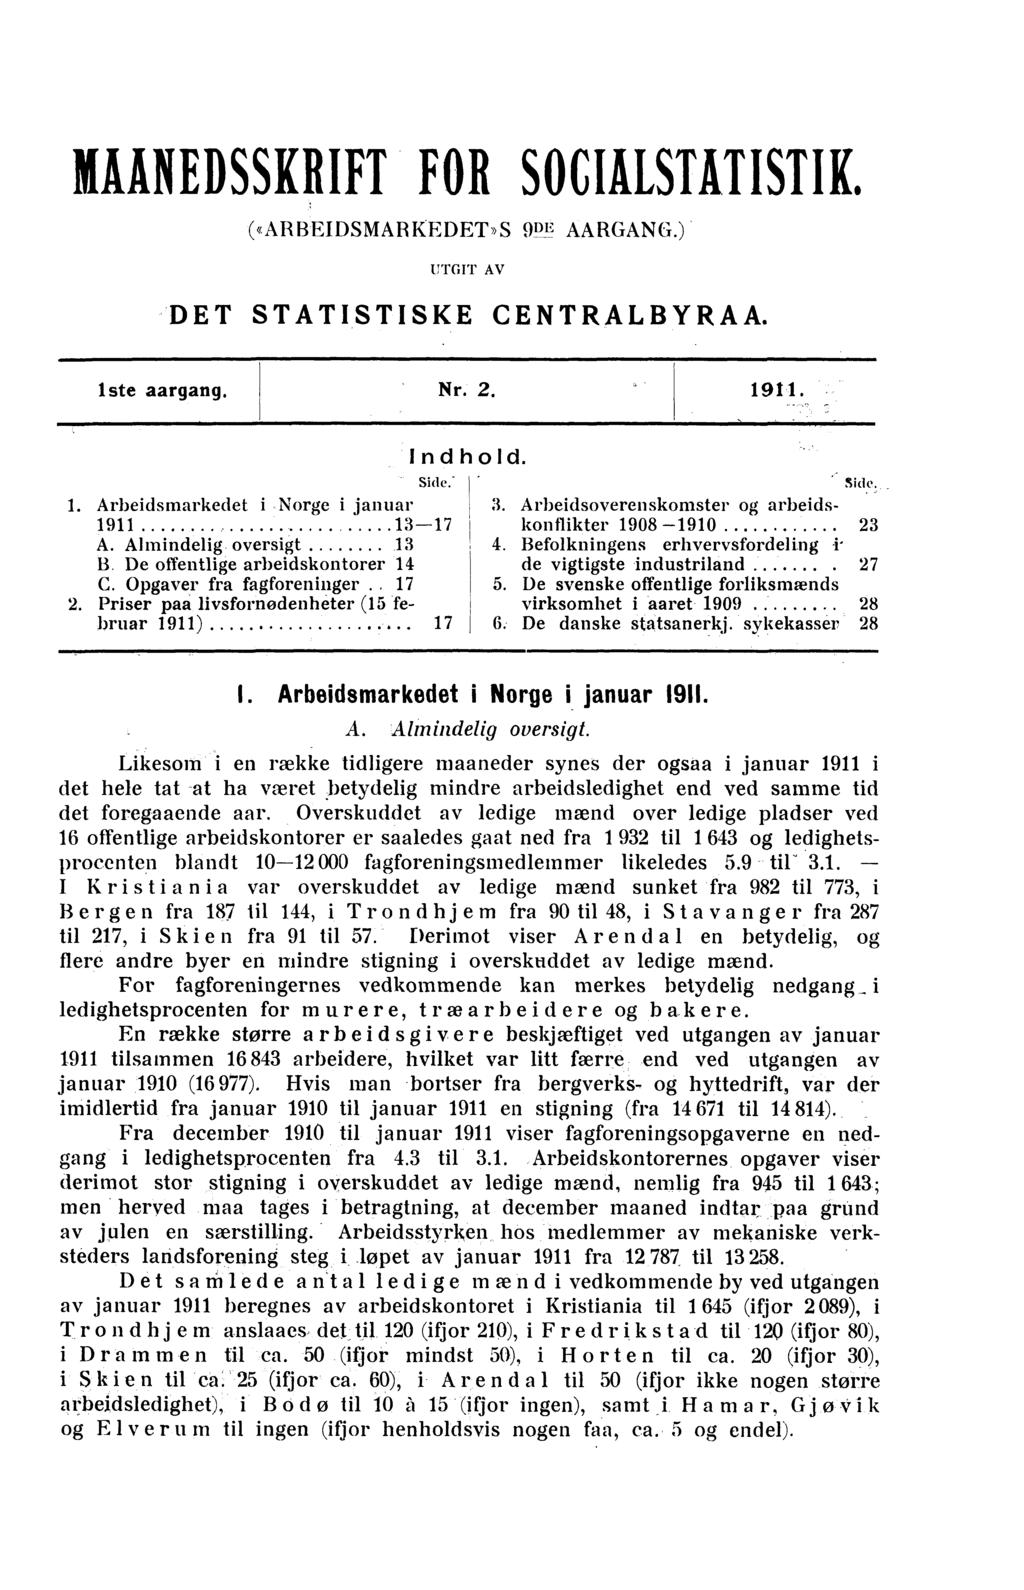 rtilikliedsskrift FOR SOCIALSTHISTIE («ARBEIDSMARKEDET»S 9DE AARGANG.) UTGIT AV DET STATISTISKE CENTRALBYRAA. iste aargang. Nr. 2. 1911. Side. - 1. Arbeidsmarkedet i Norge i januar 1911 13-17 A.